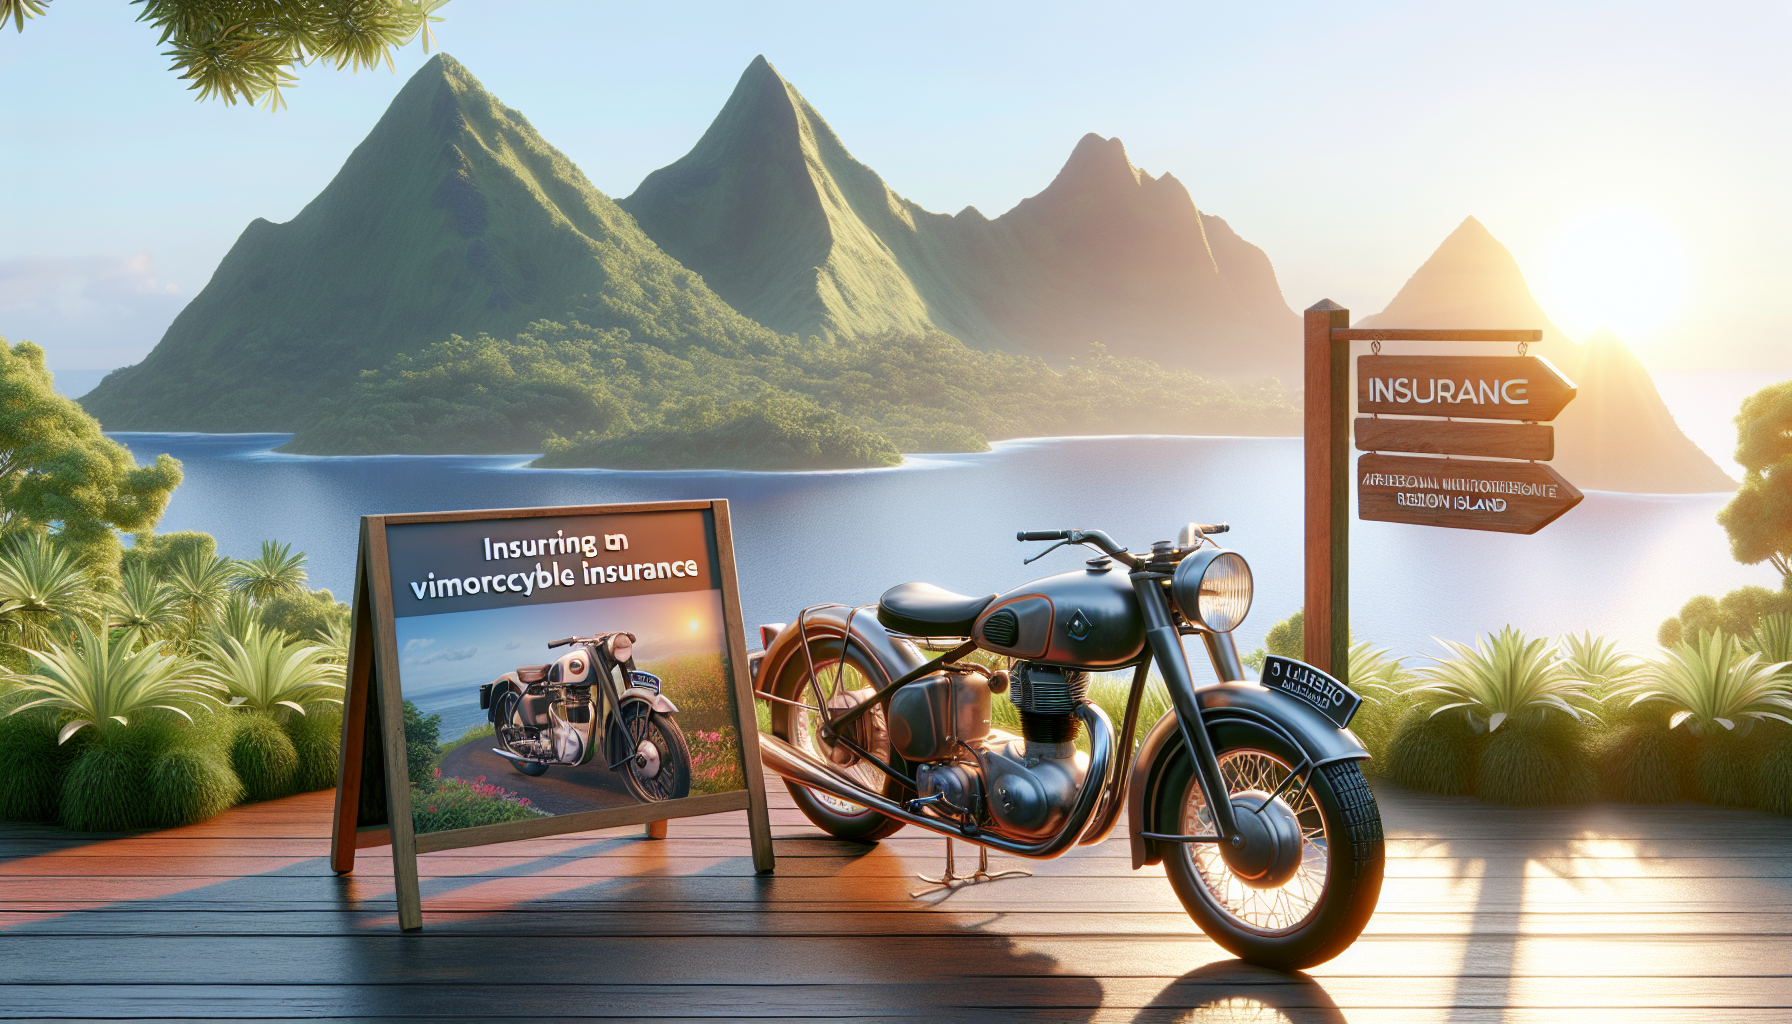 assurance moto à la réunion : découvrez comment assurer une moto de collection sur l'île. trouvez toutes les informations sur l'assurance moto à la réunion.